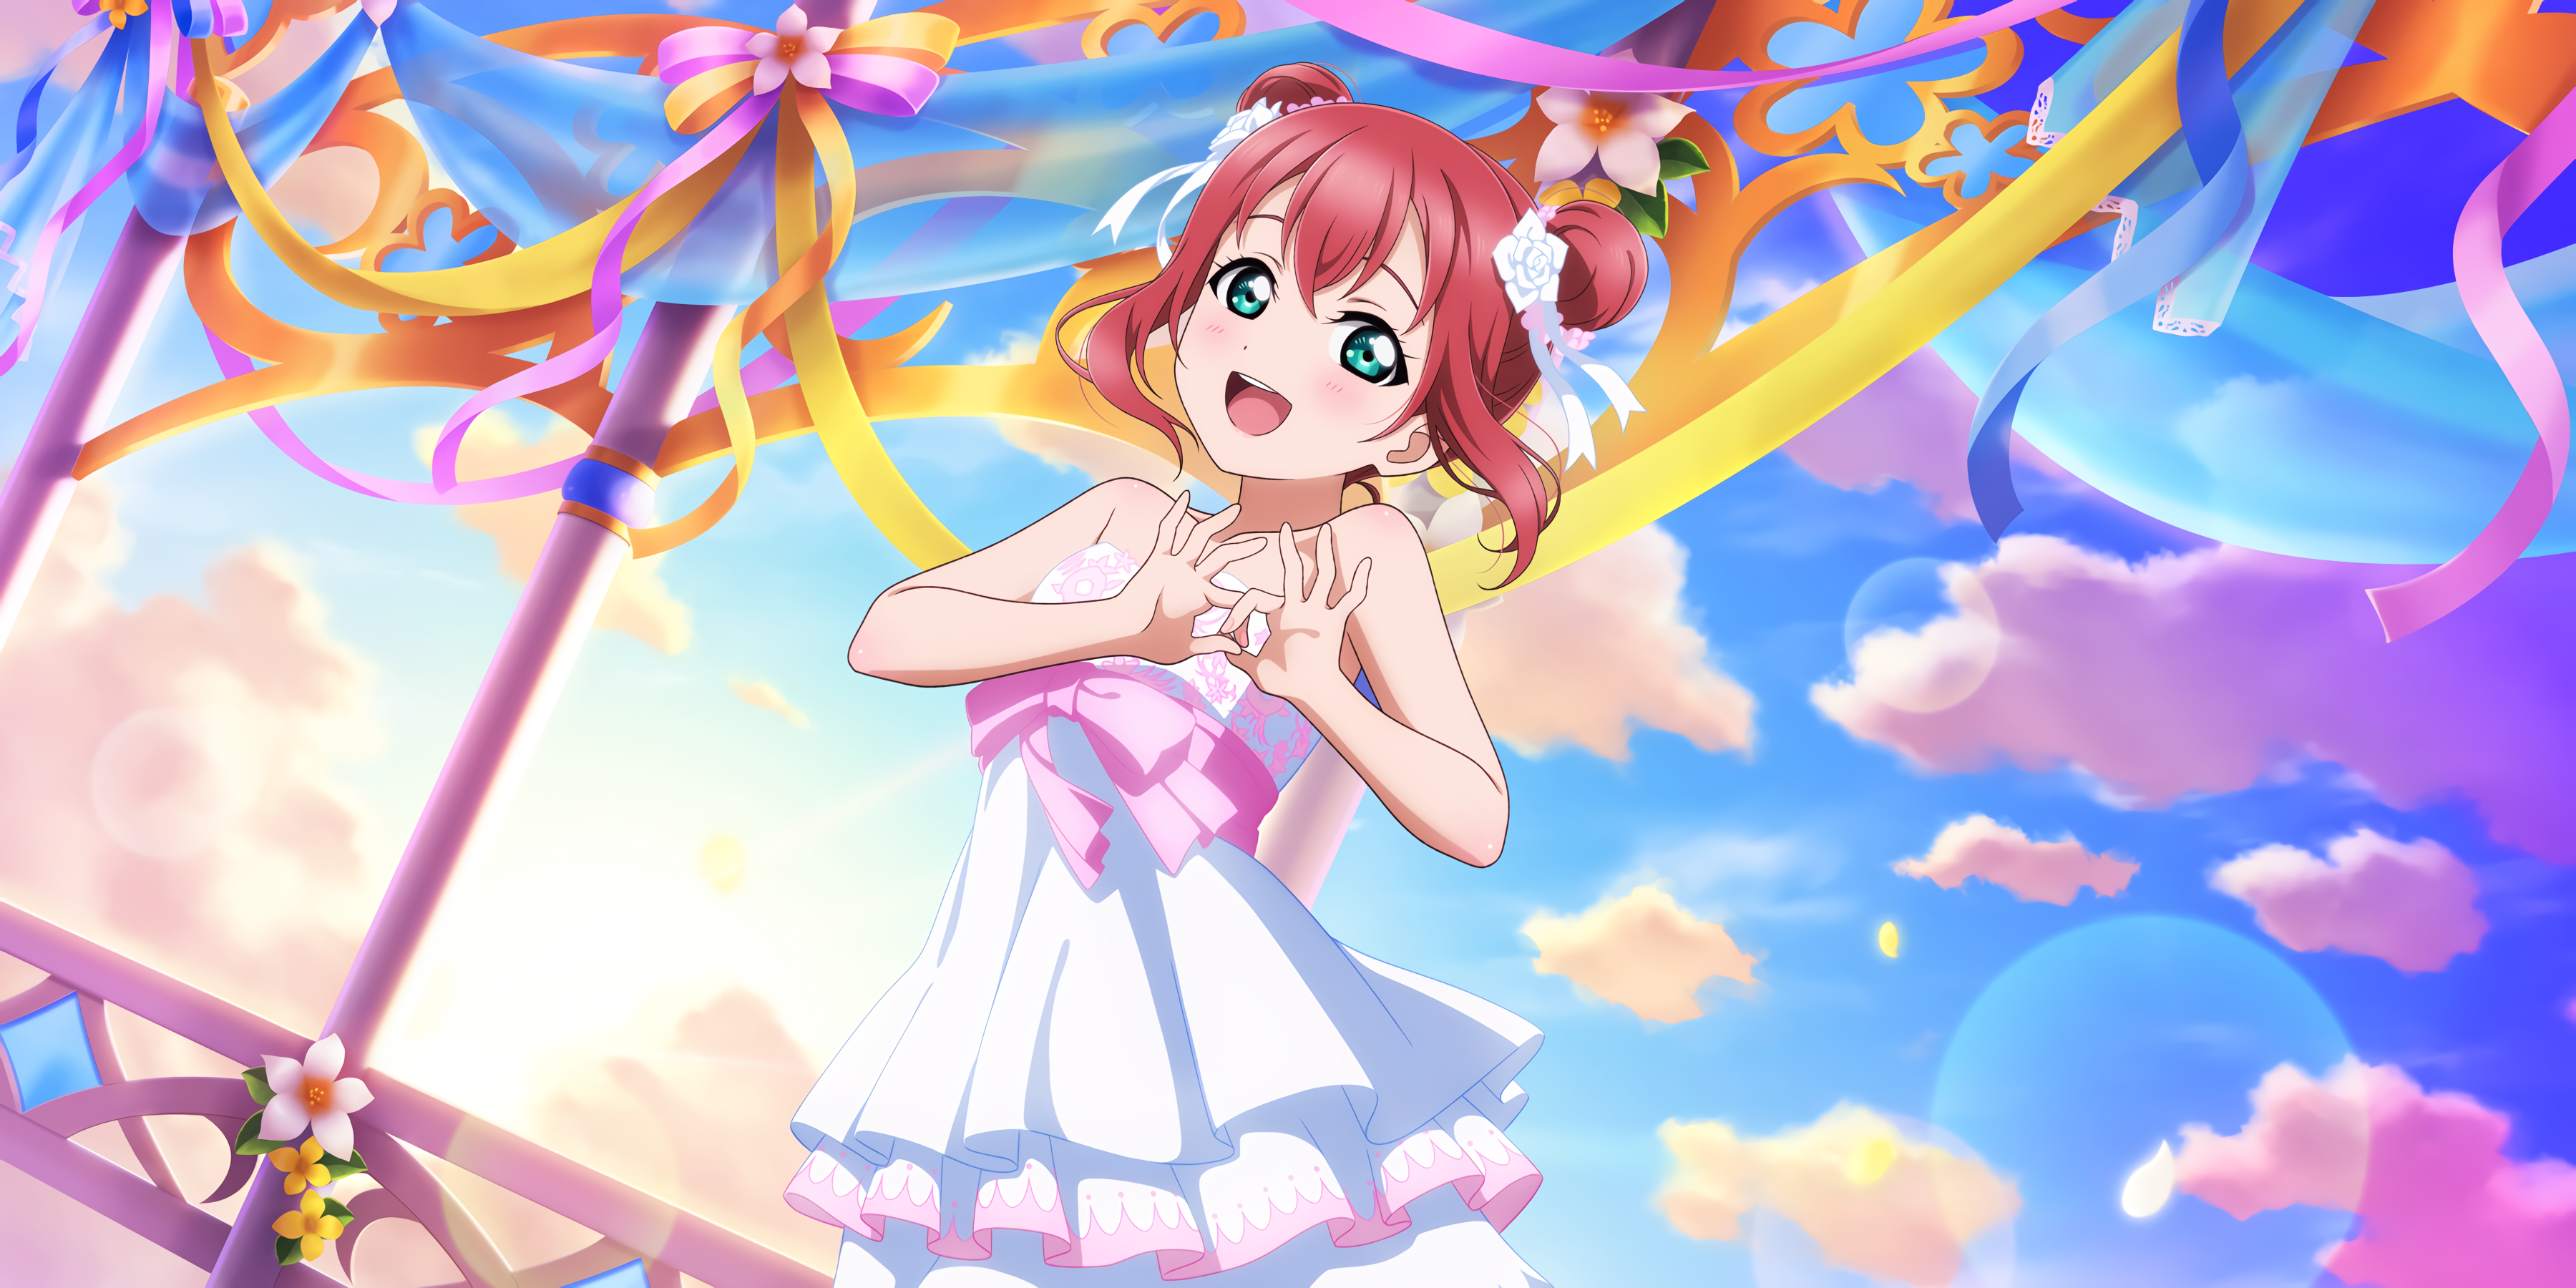 Anime 3600x1800 Kurosawa Ruby Love Live! Sunshine anime anime girls colorful dress open mouth aqua eyes sky